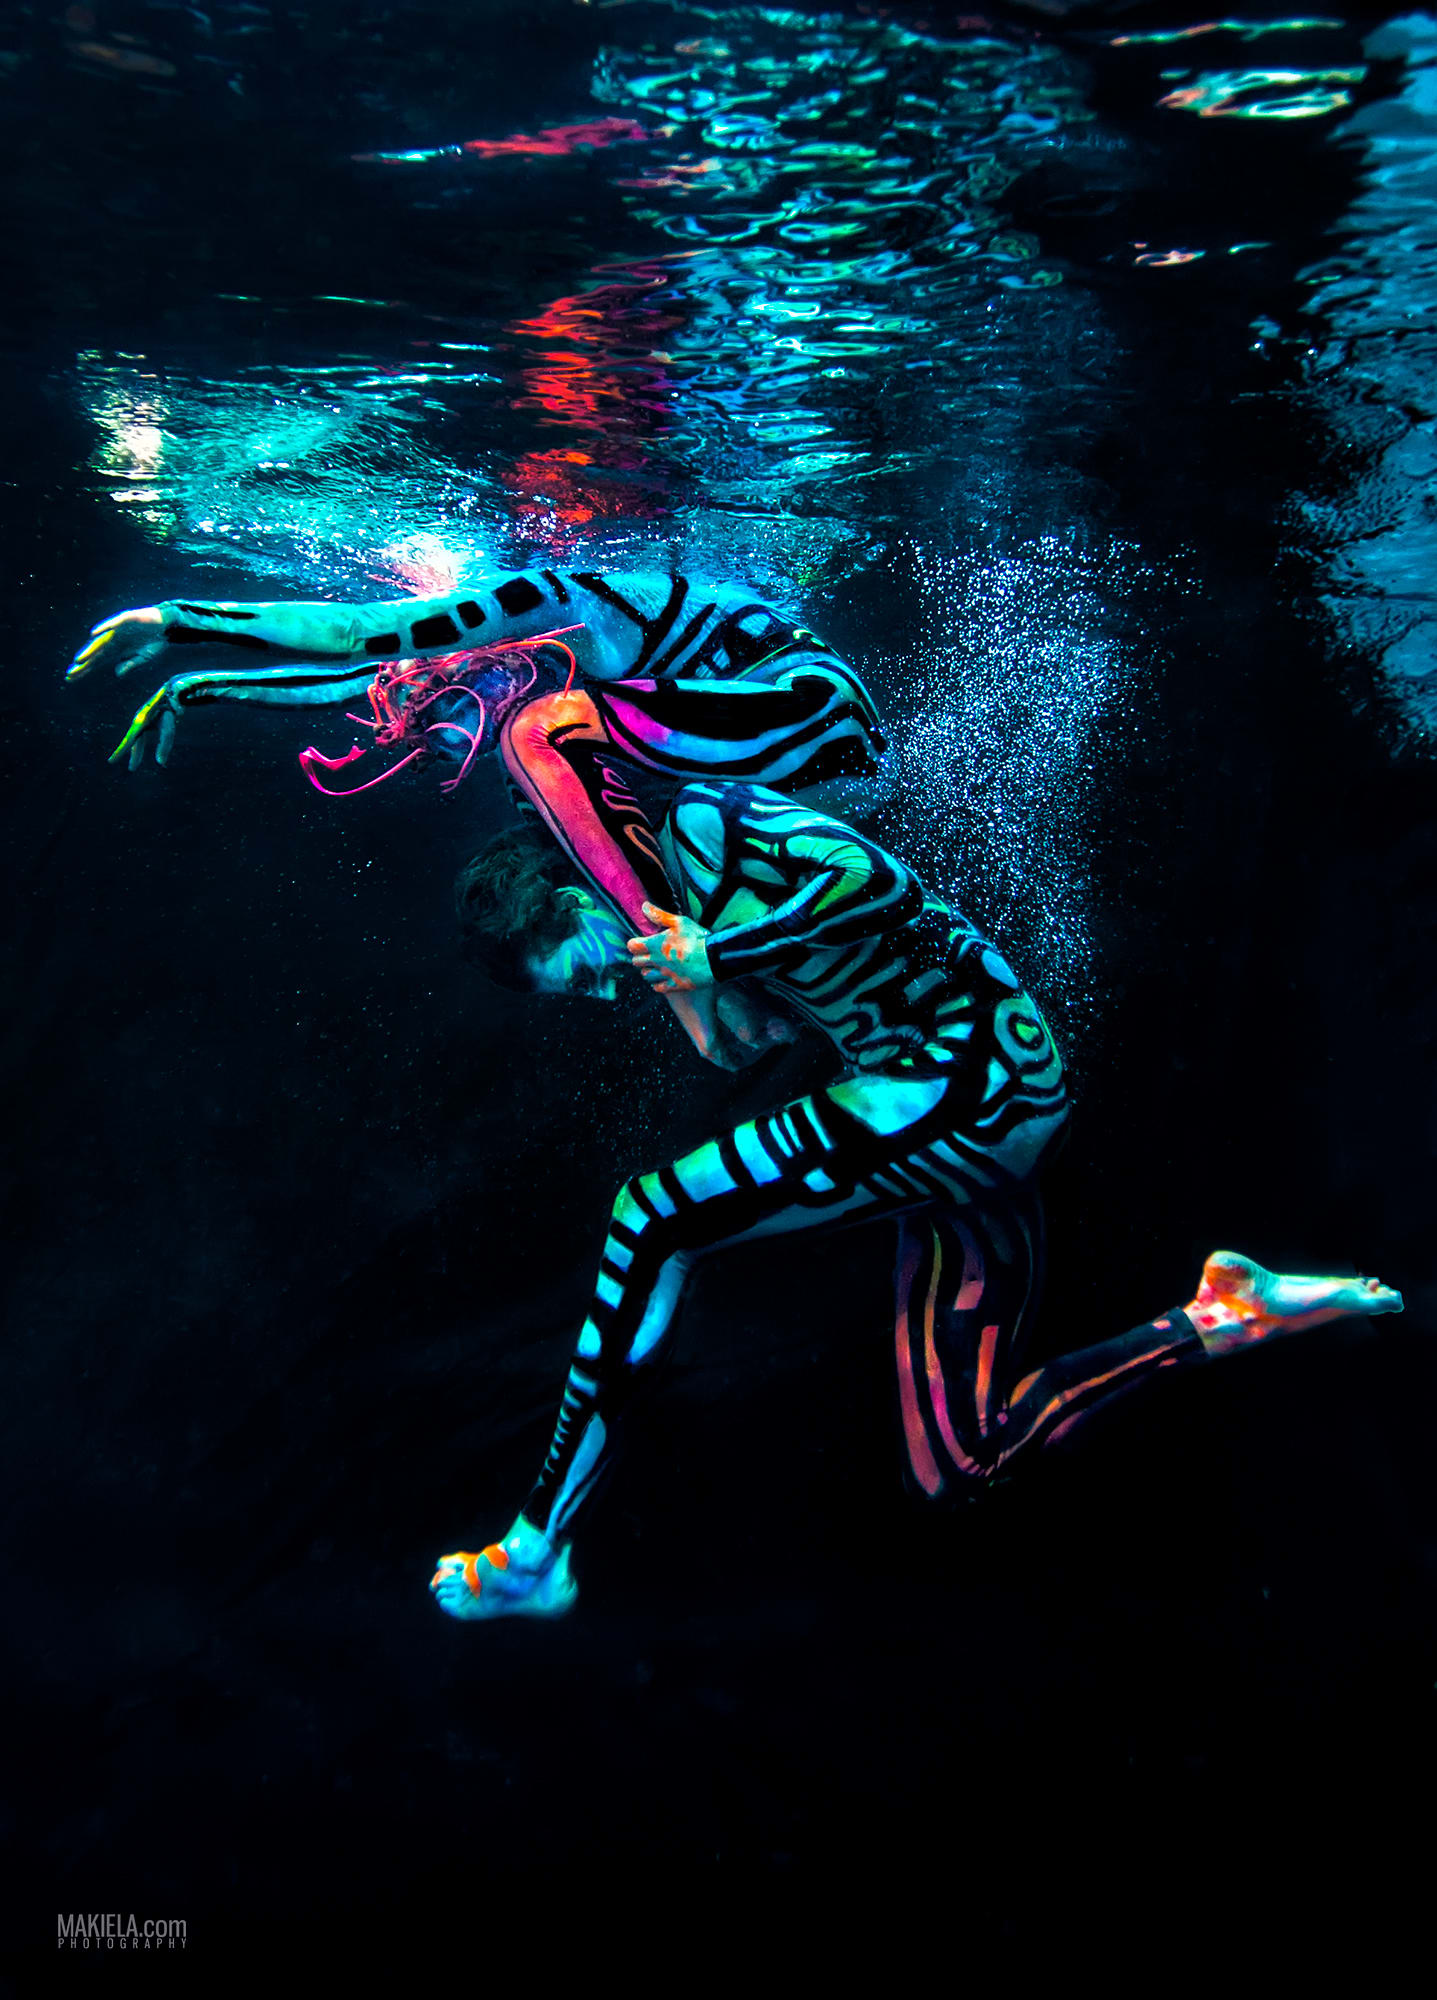 "تموجات الموضة" .. اكتشف سحر الأزياء تحت الماء بعدسة مصور مقيم في دبي